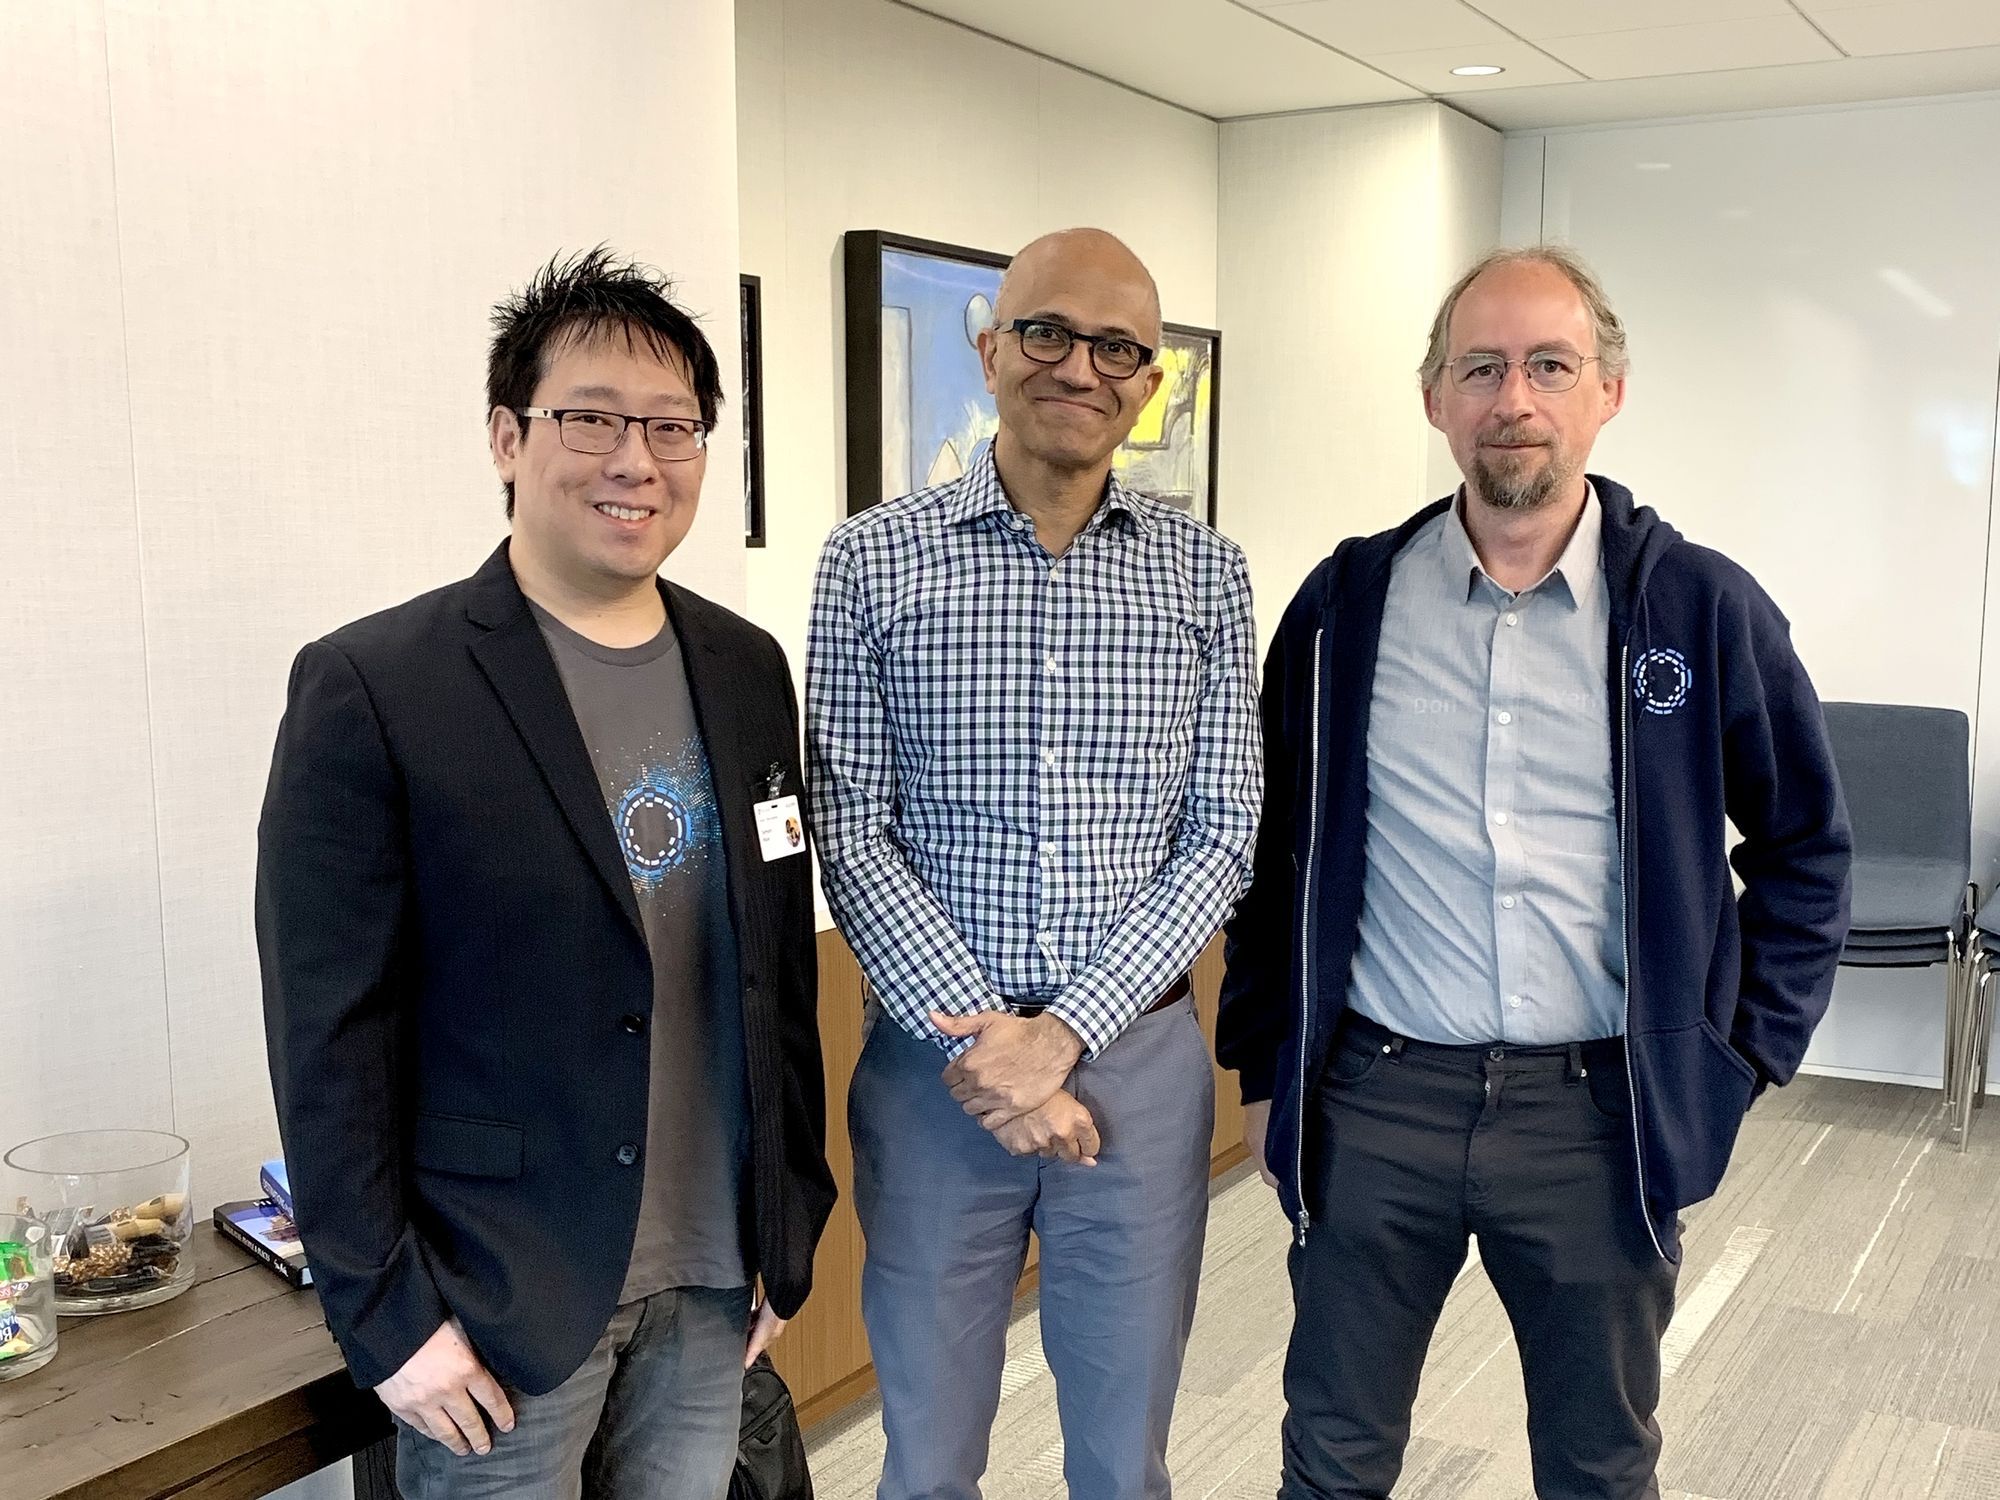 Samson Mow, Satya Nadella, and Dr. Adam Back at Microsoft